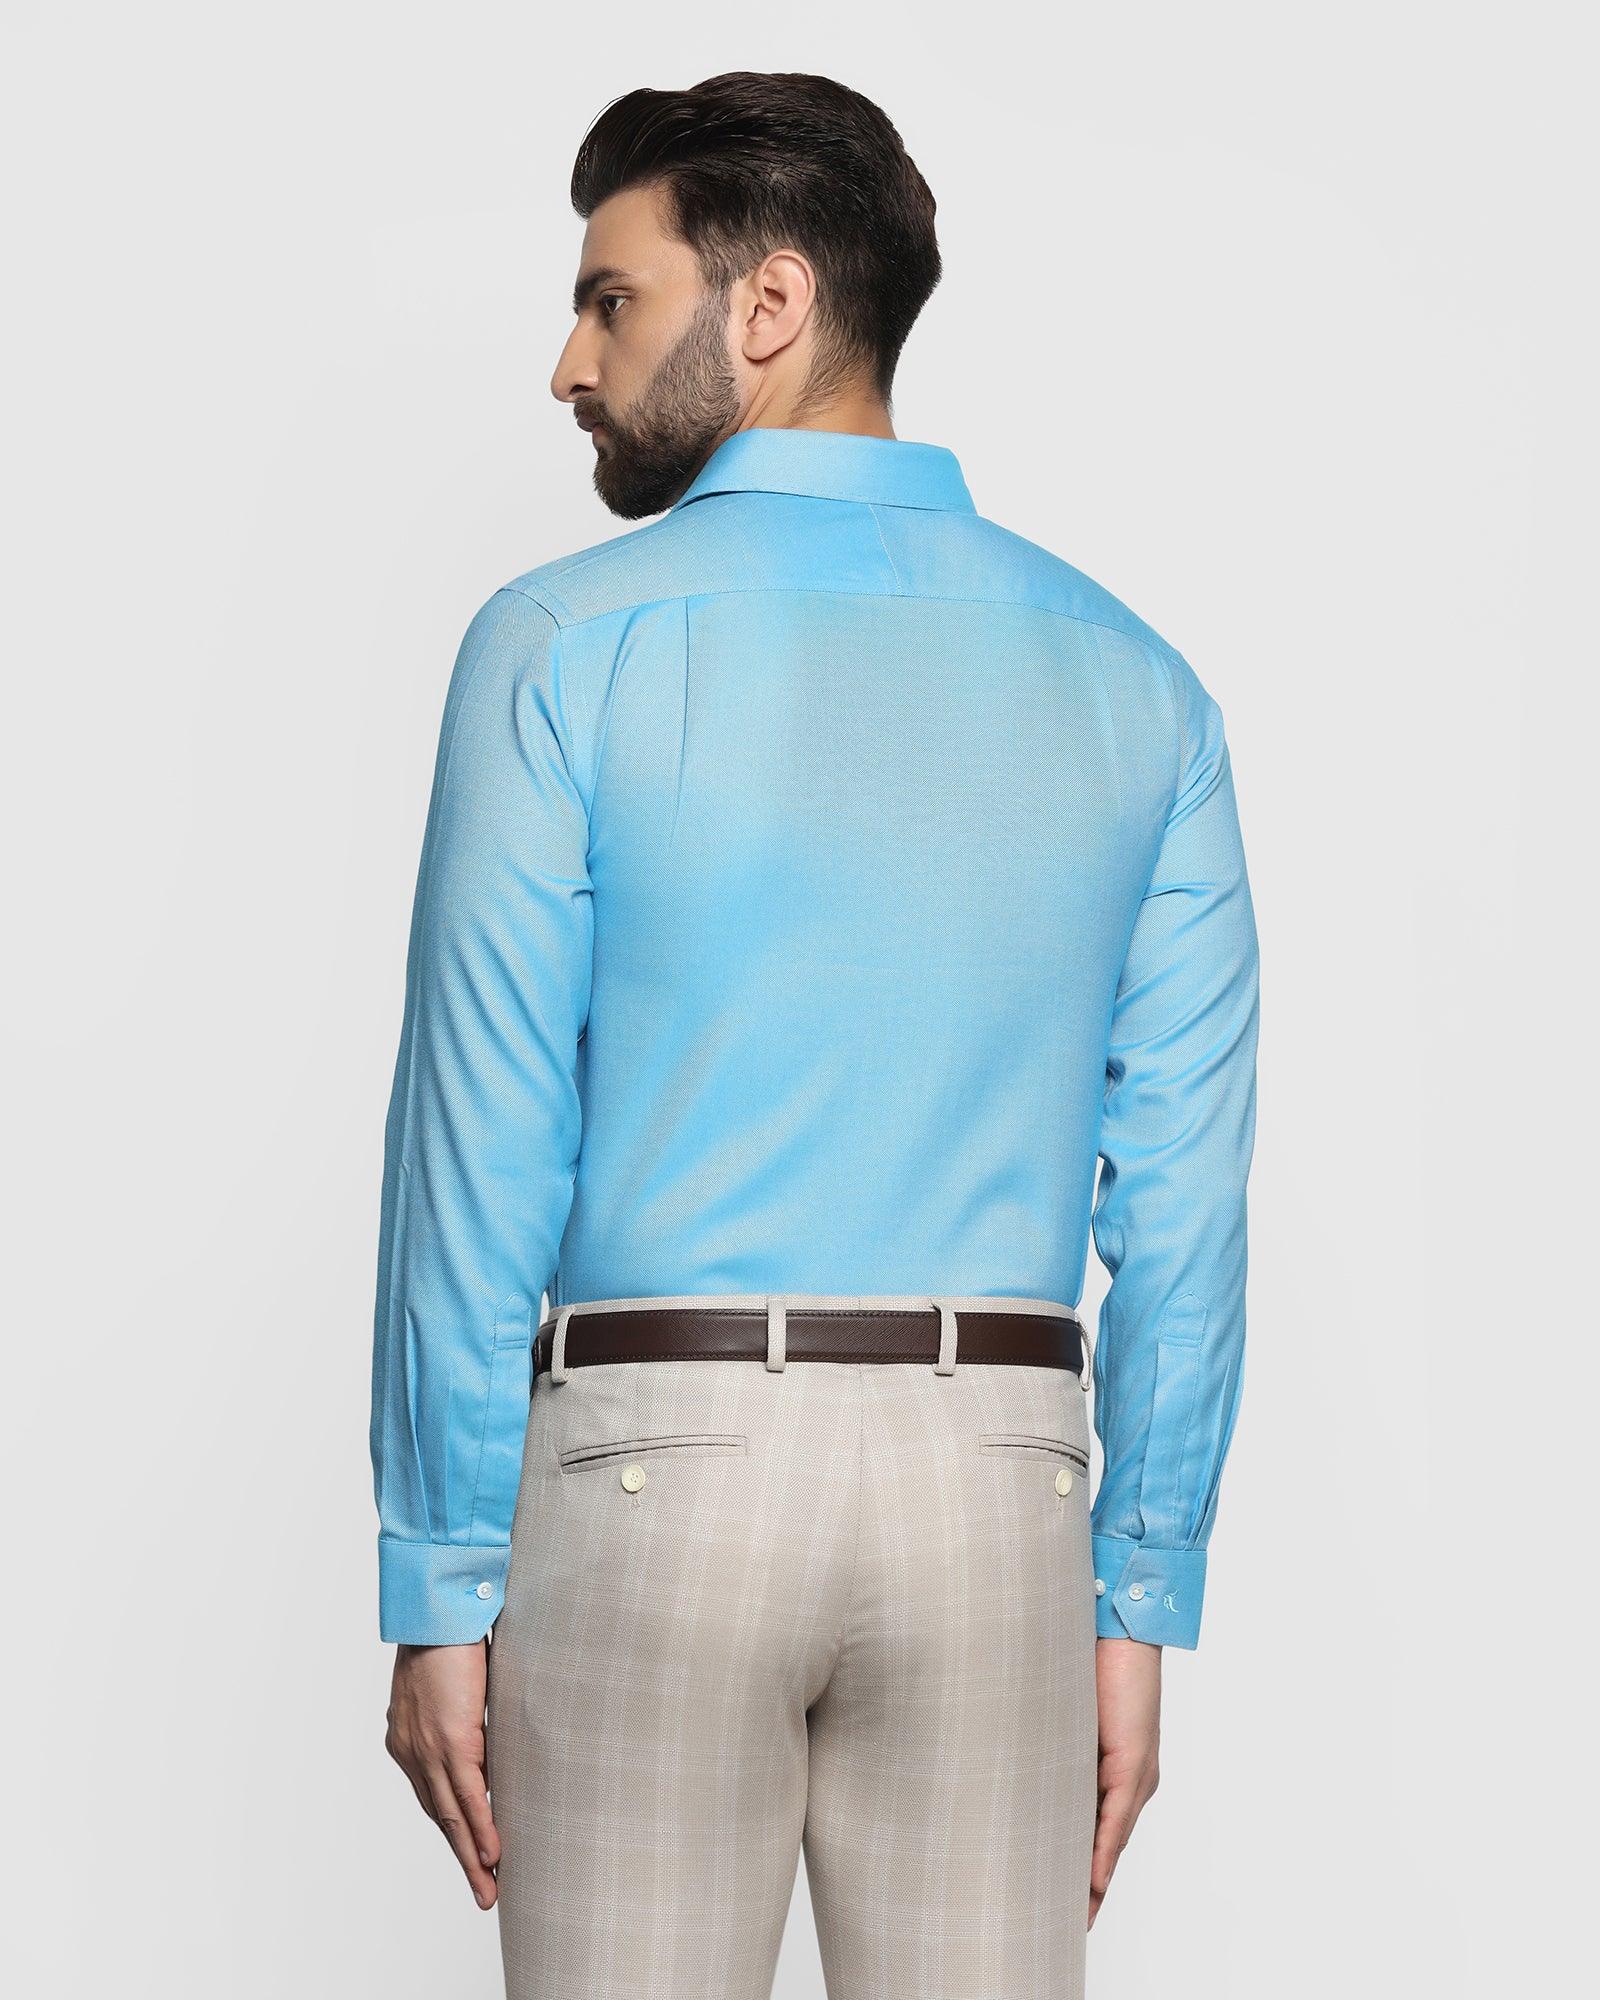 Non Iron Formal Blue Textured Shirt - Decade